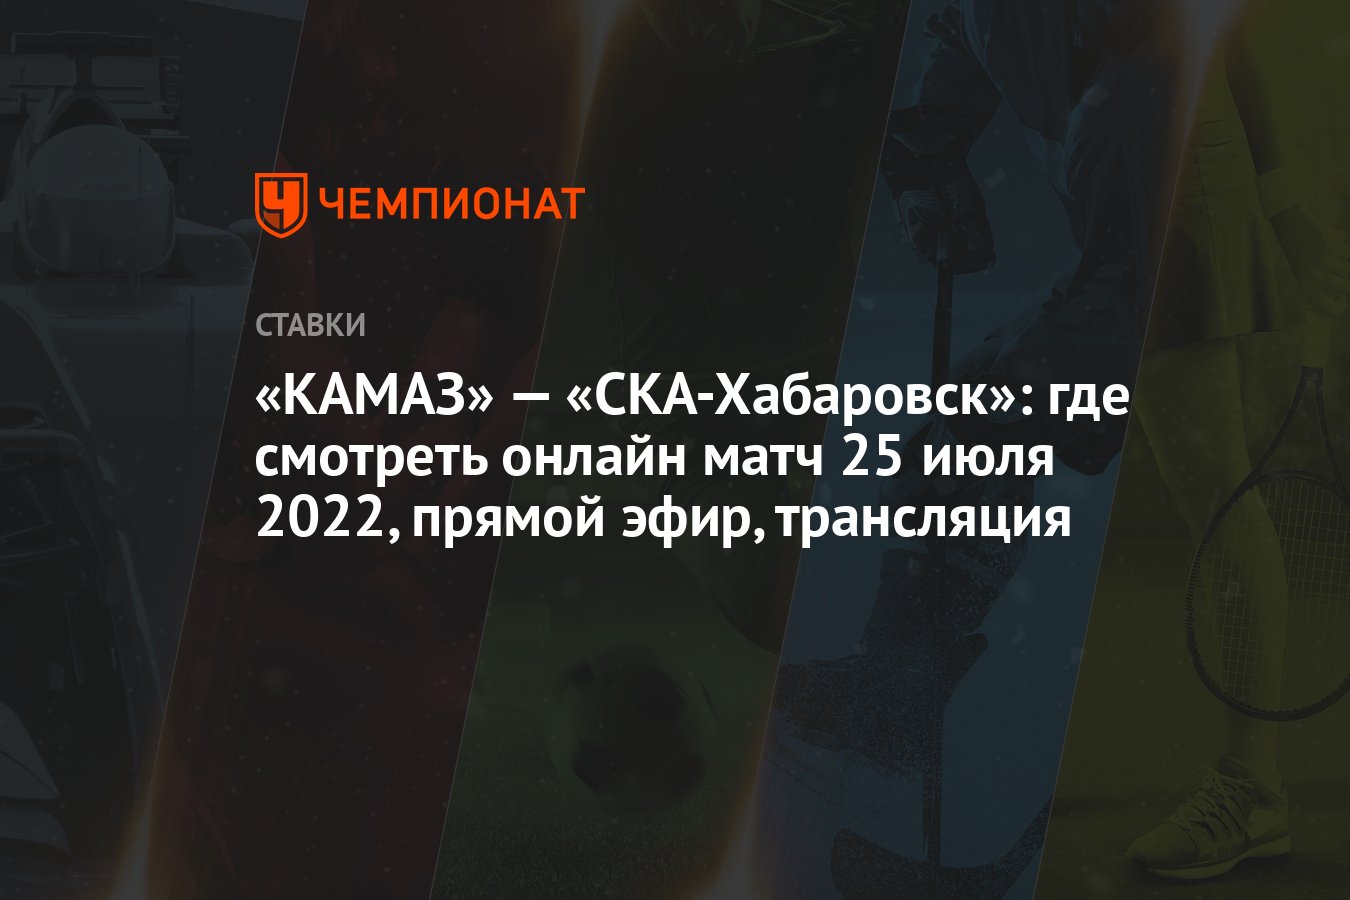 kamaz-—-ska-khabarovsk:-25-temmuz-2022-online-maci-nereden-izlenir,-canli,-yayin